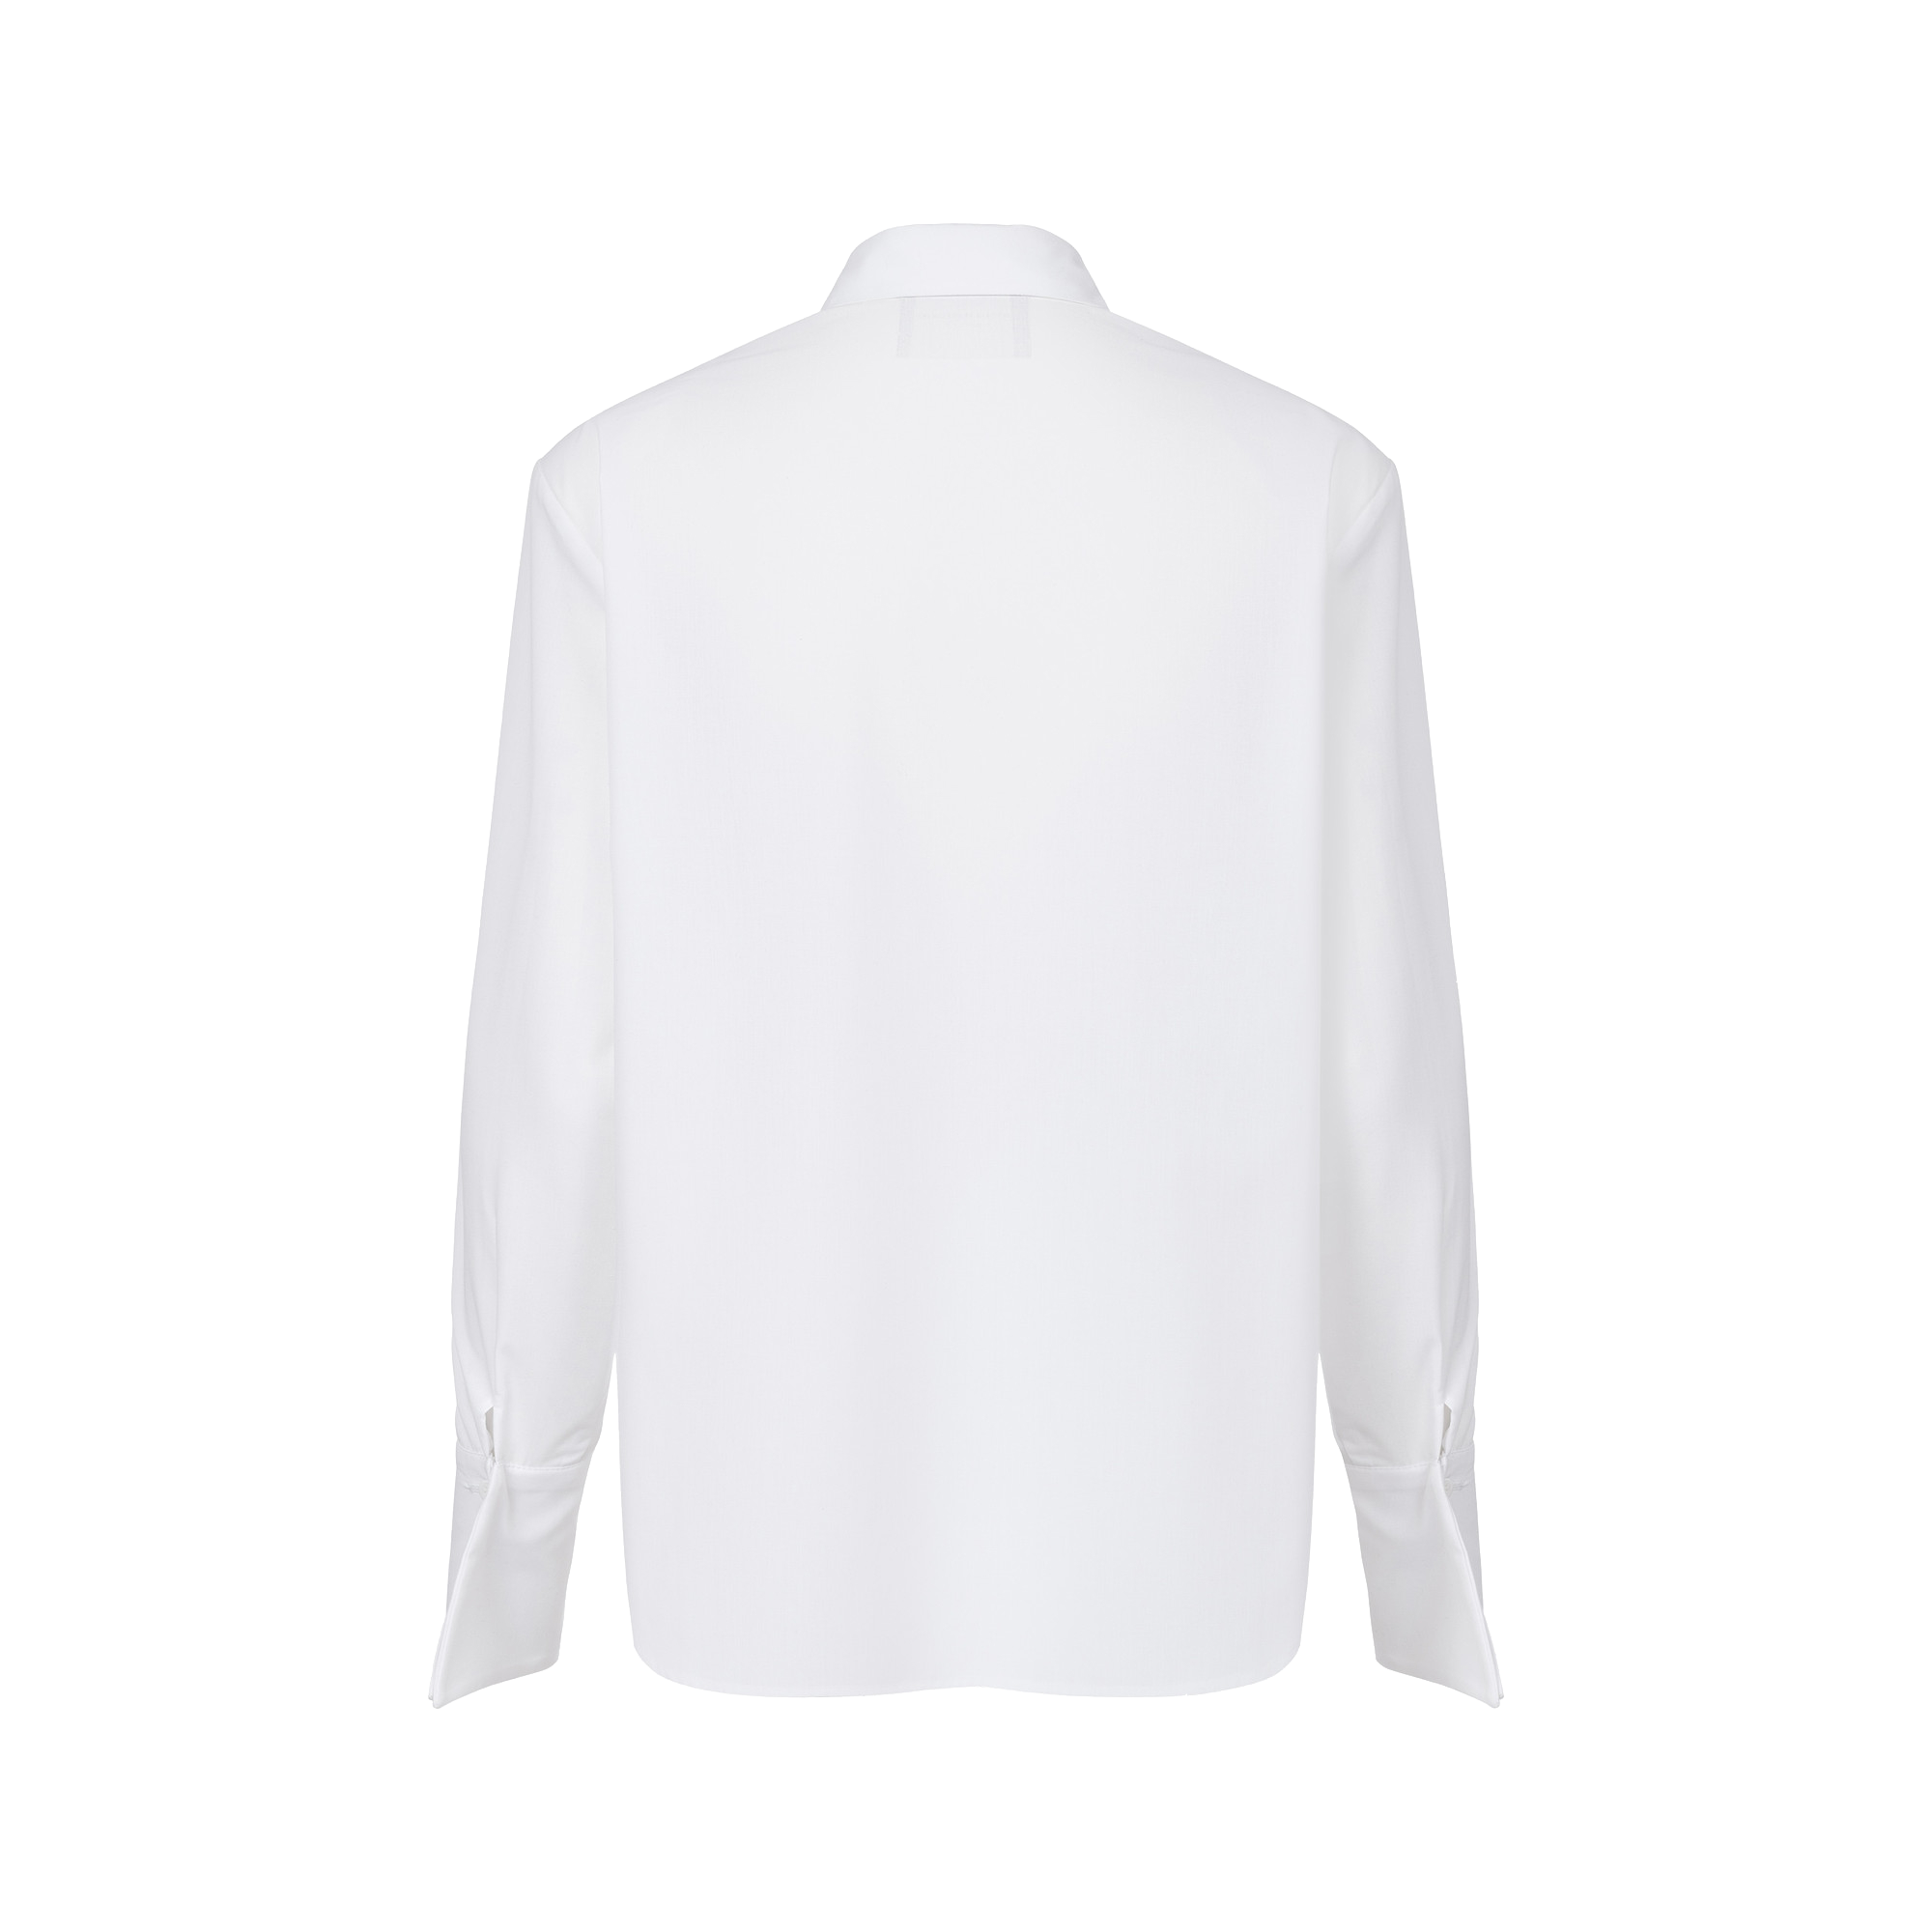 Shop Wiktoria Frankowska Ocean's Caress White Shirt